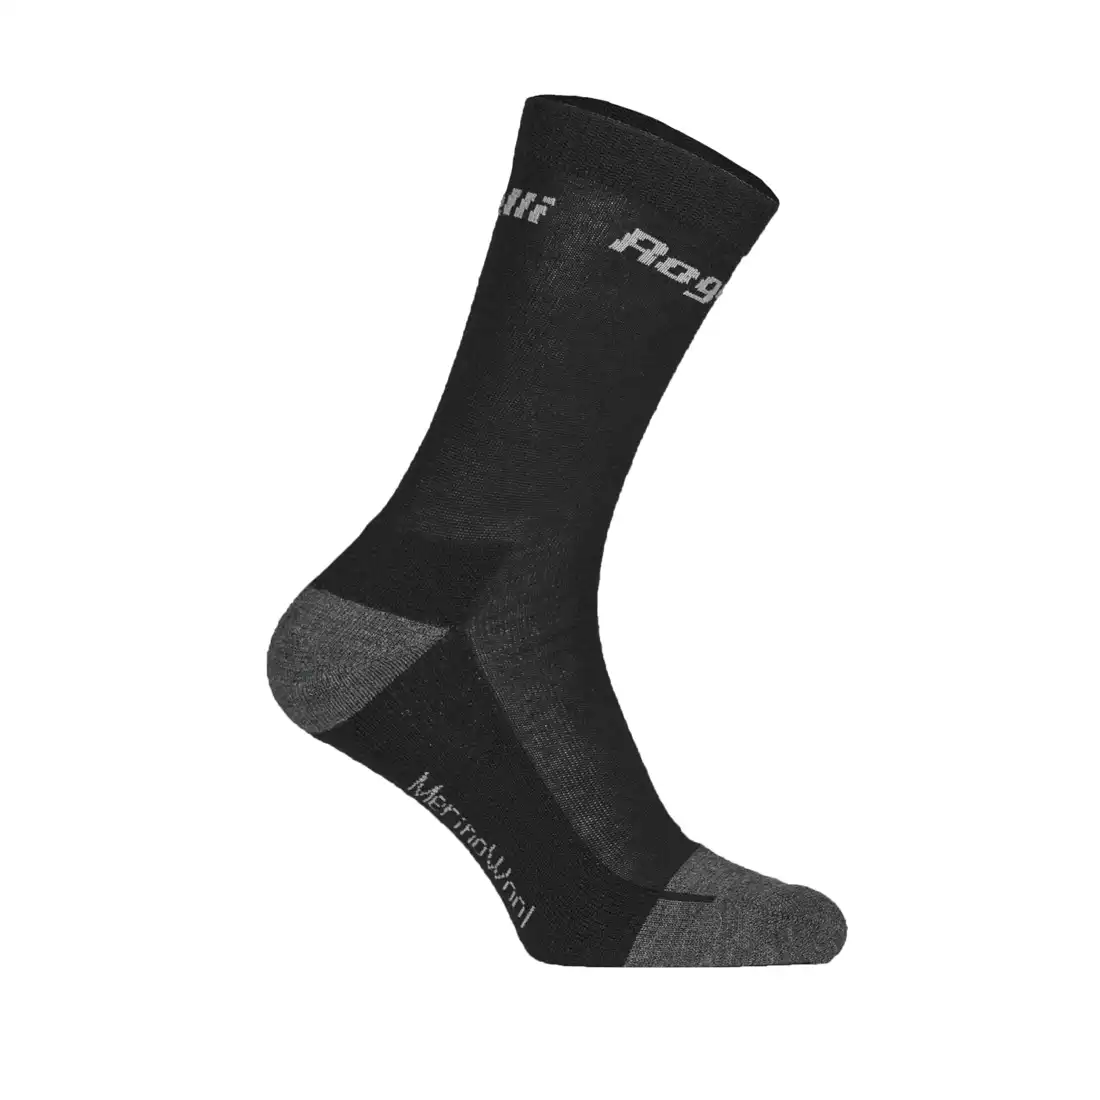 ROGELLI MERINO WOOL - winter sports socks